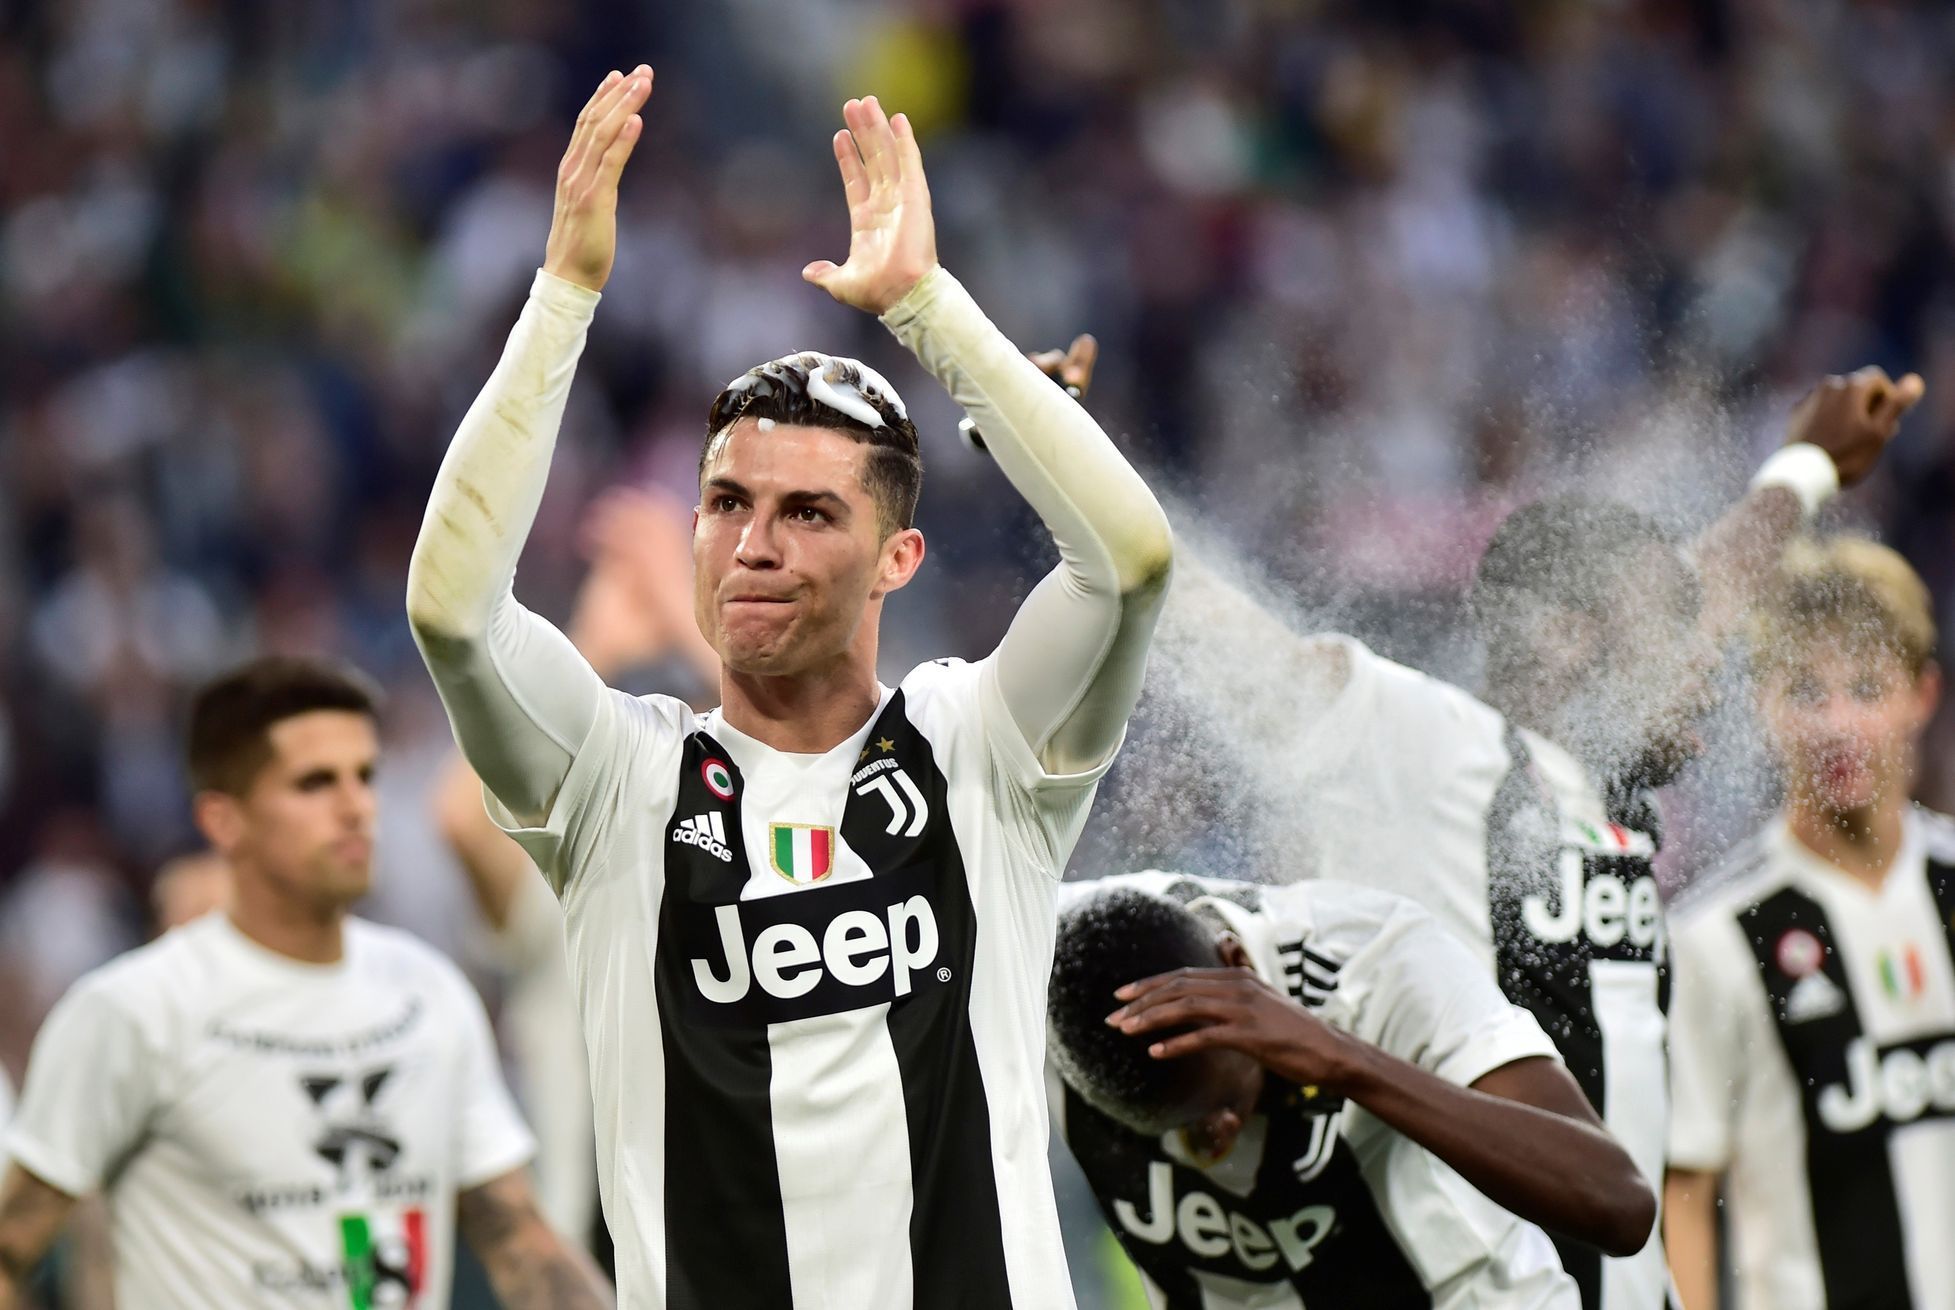 Portugalský fotbalista Cristiano Ronaldo si se spoluhráči z Juventusu Turín užívá oslavy zisku mistrovského titulu v italské lize